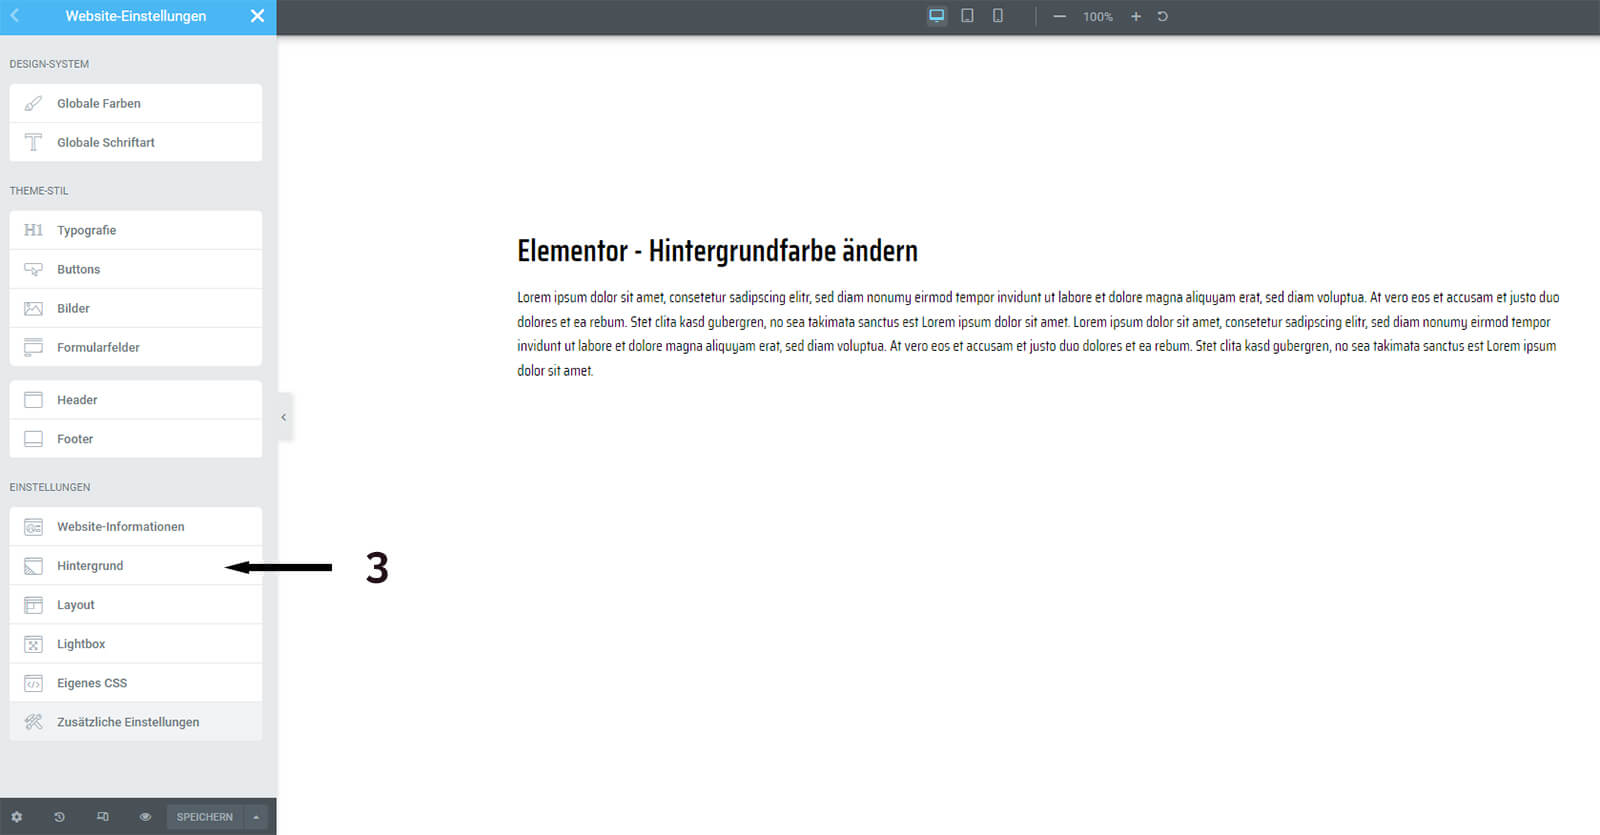 Elementor - Hintergrundfarbe ändern in den Website Einstellungen - Schritt 3